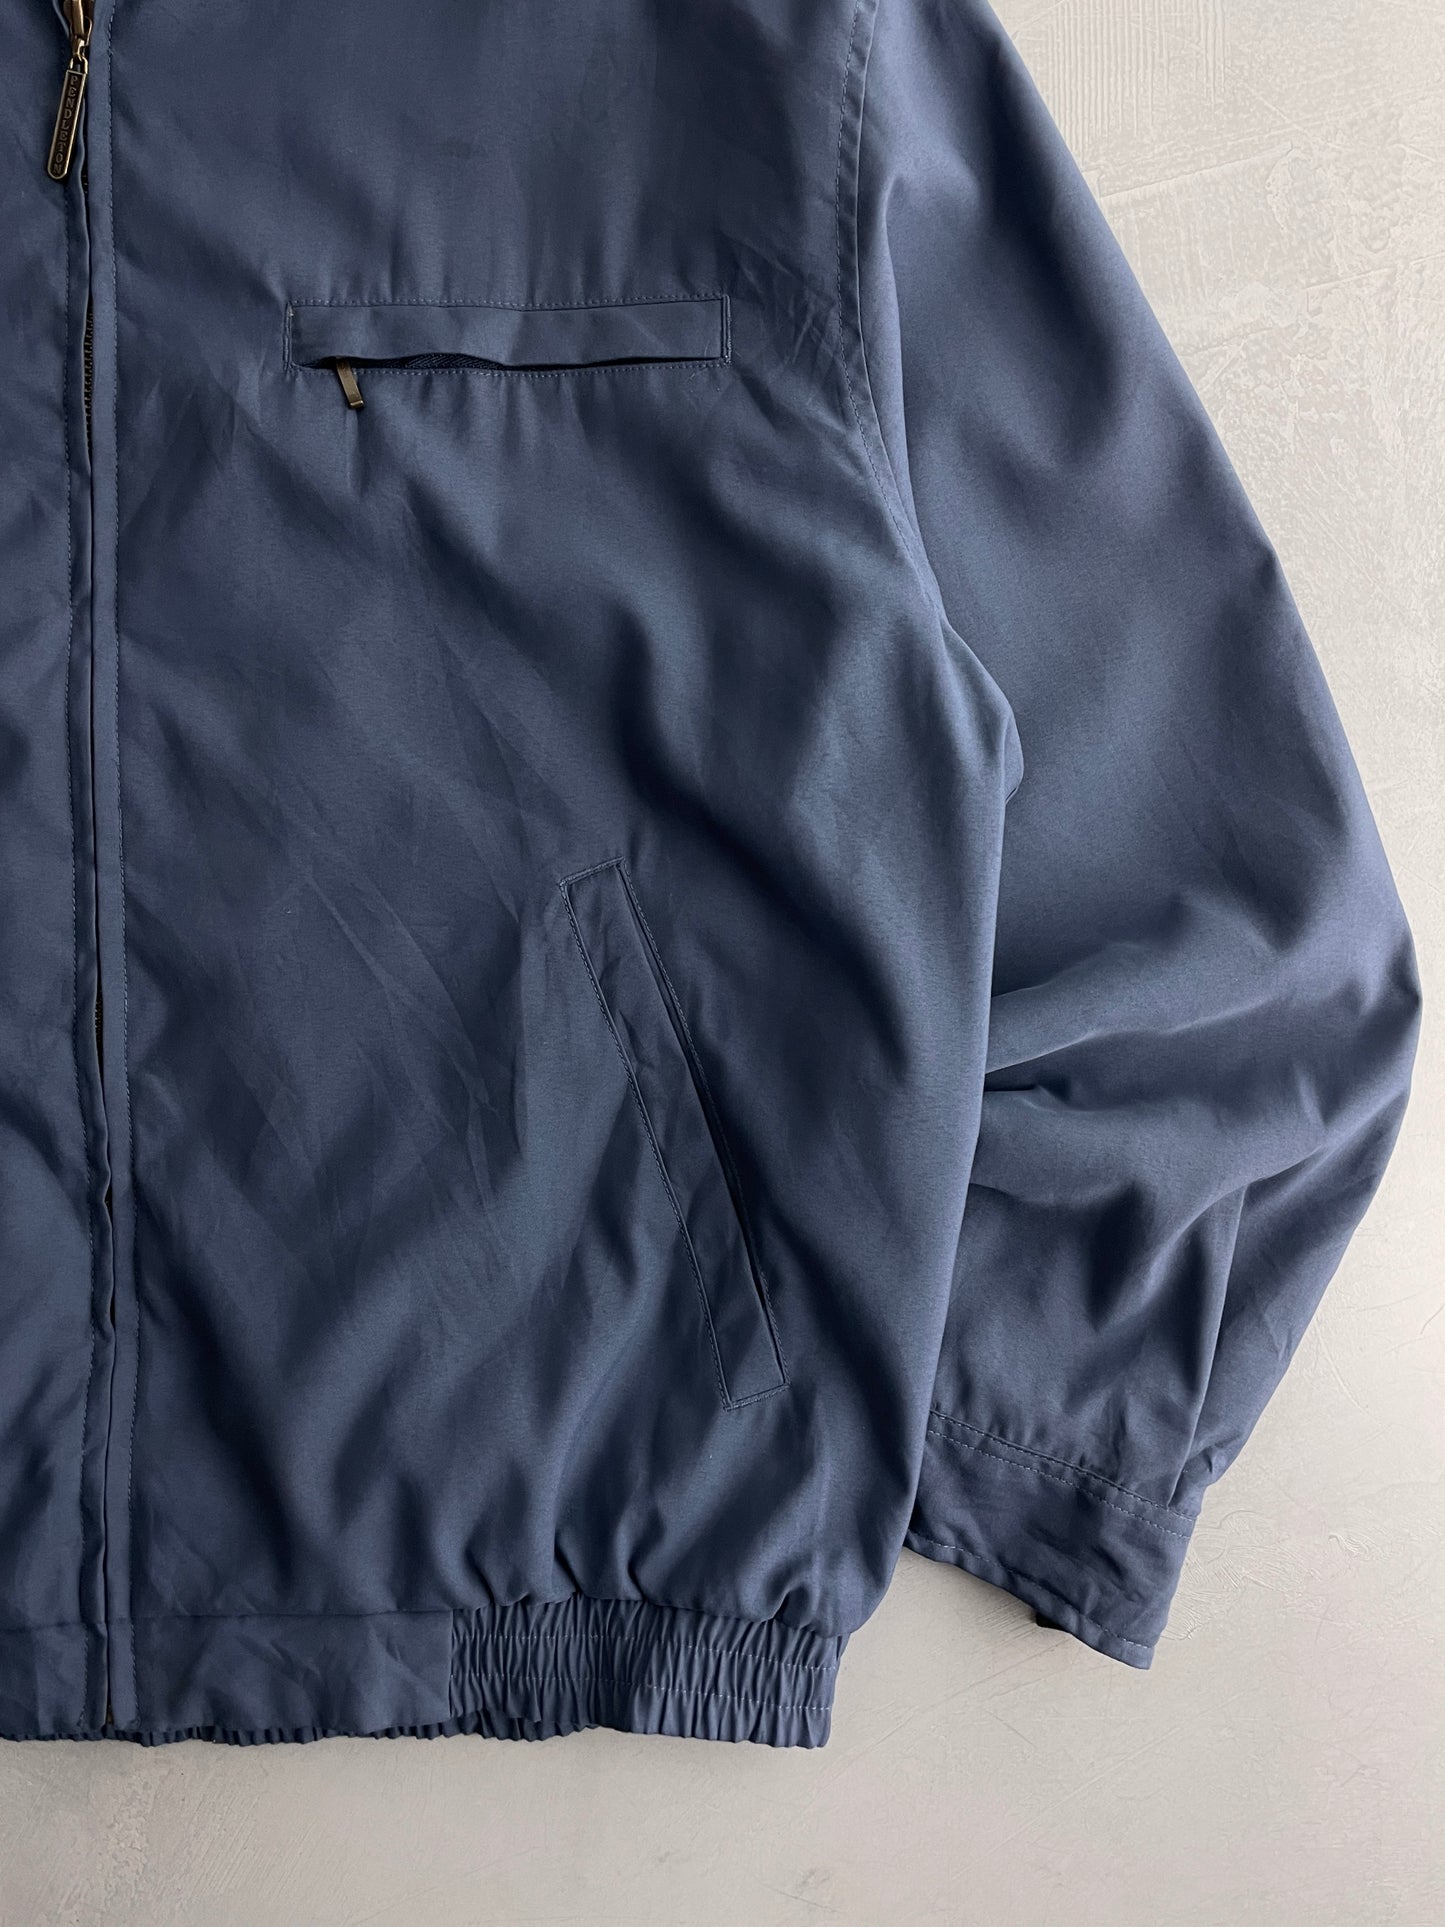 Pendleton Harrington Jacket [M/L]